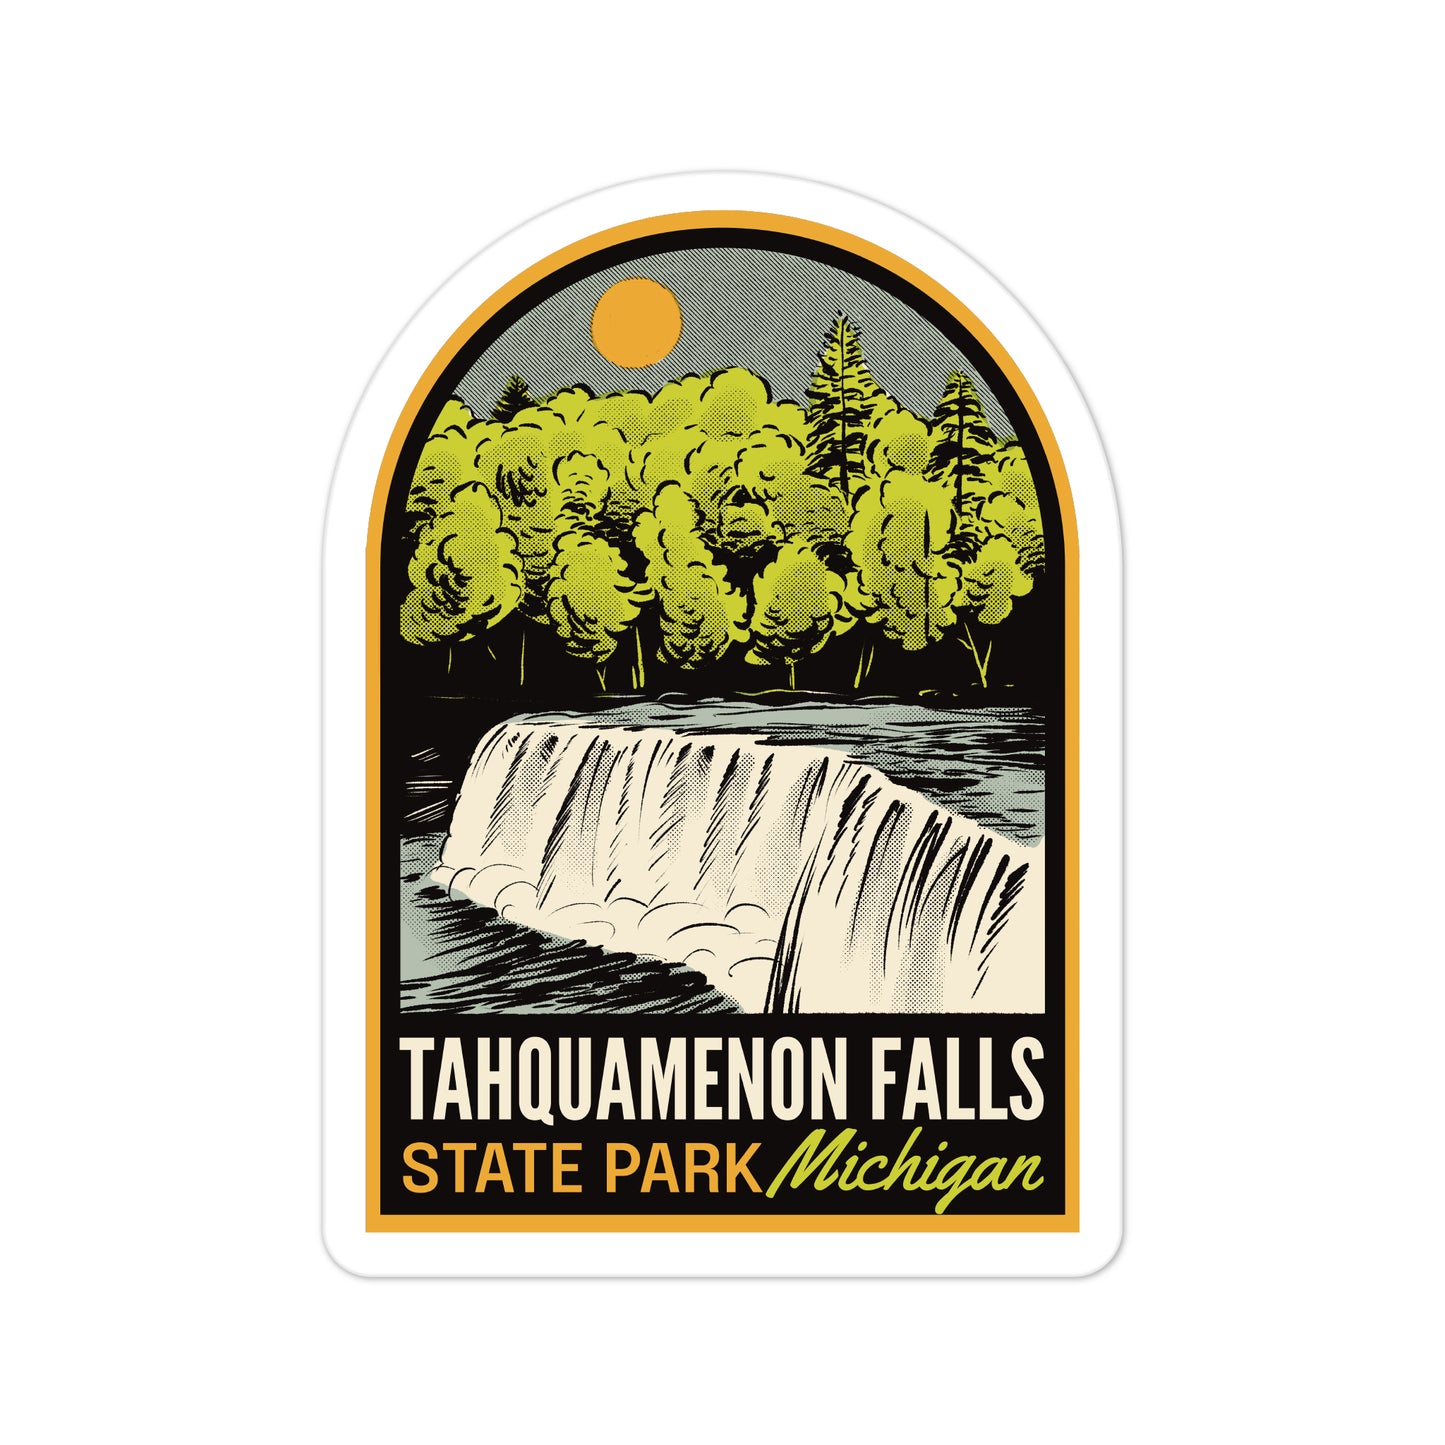 A sticker of Tahquamenon Falls State Park